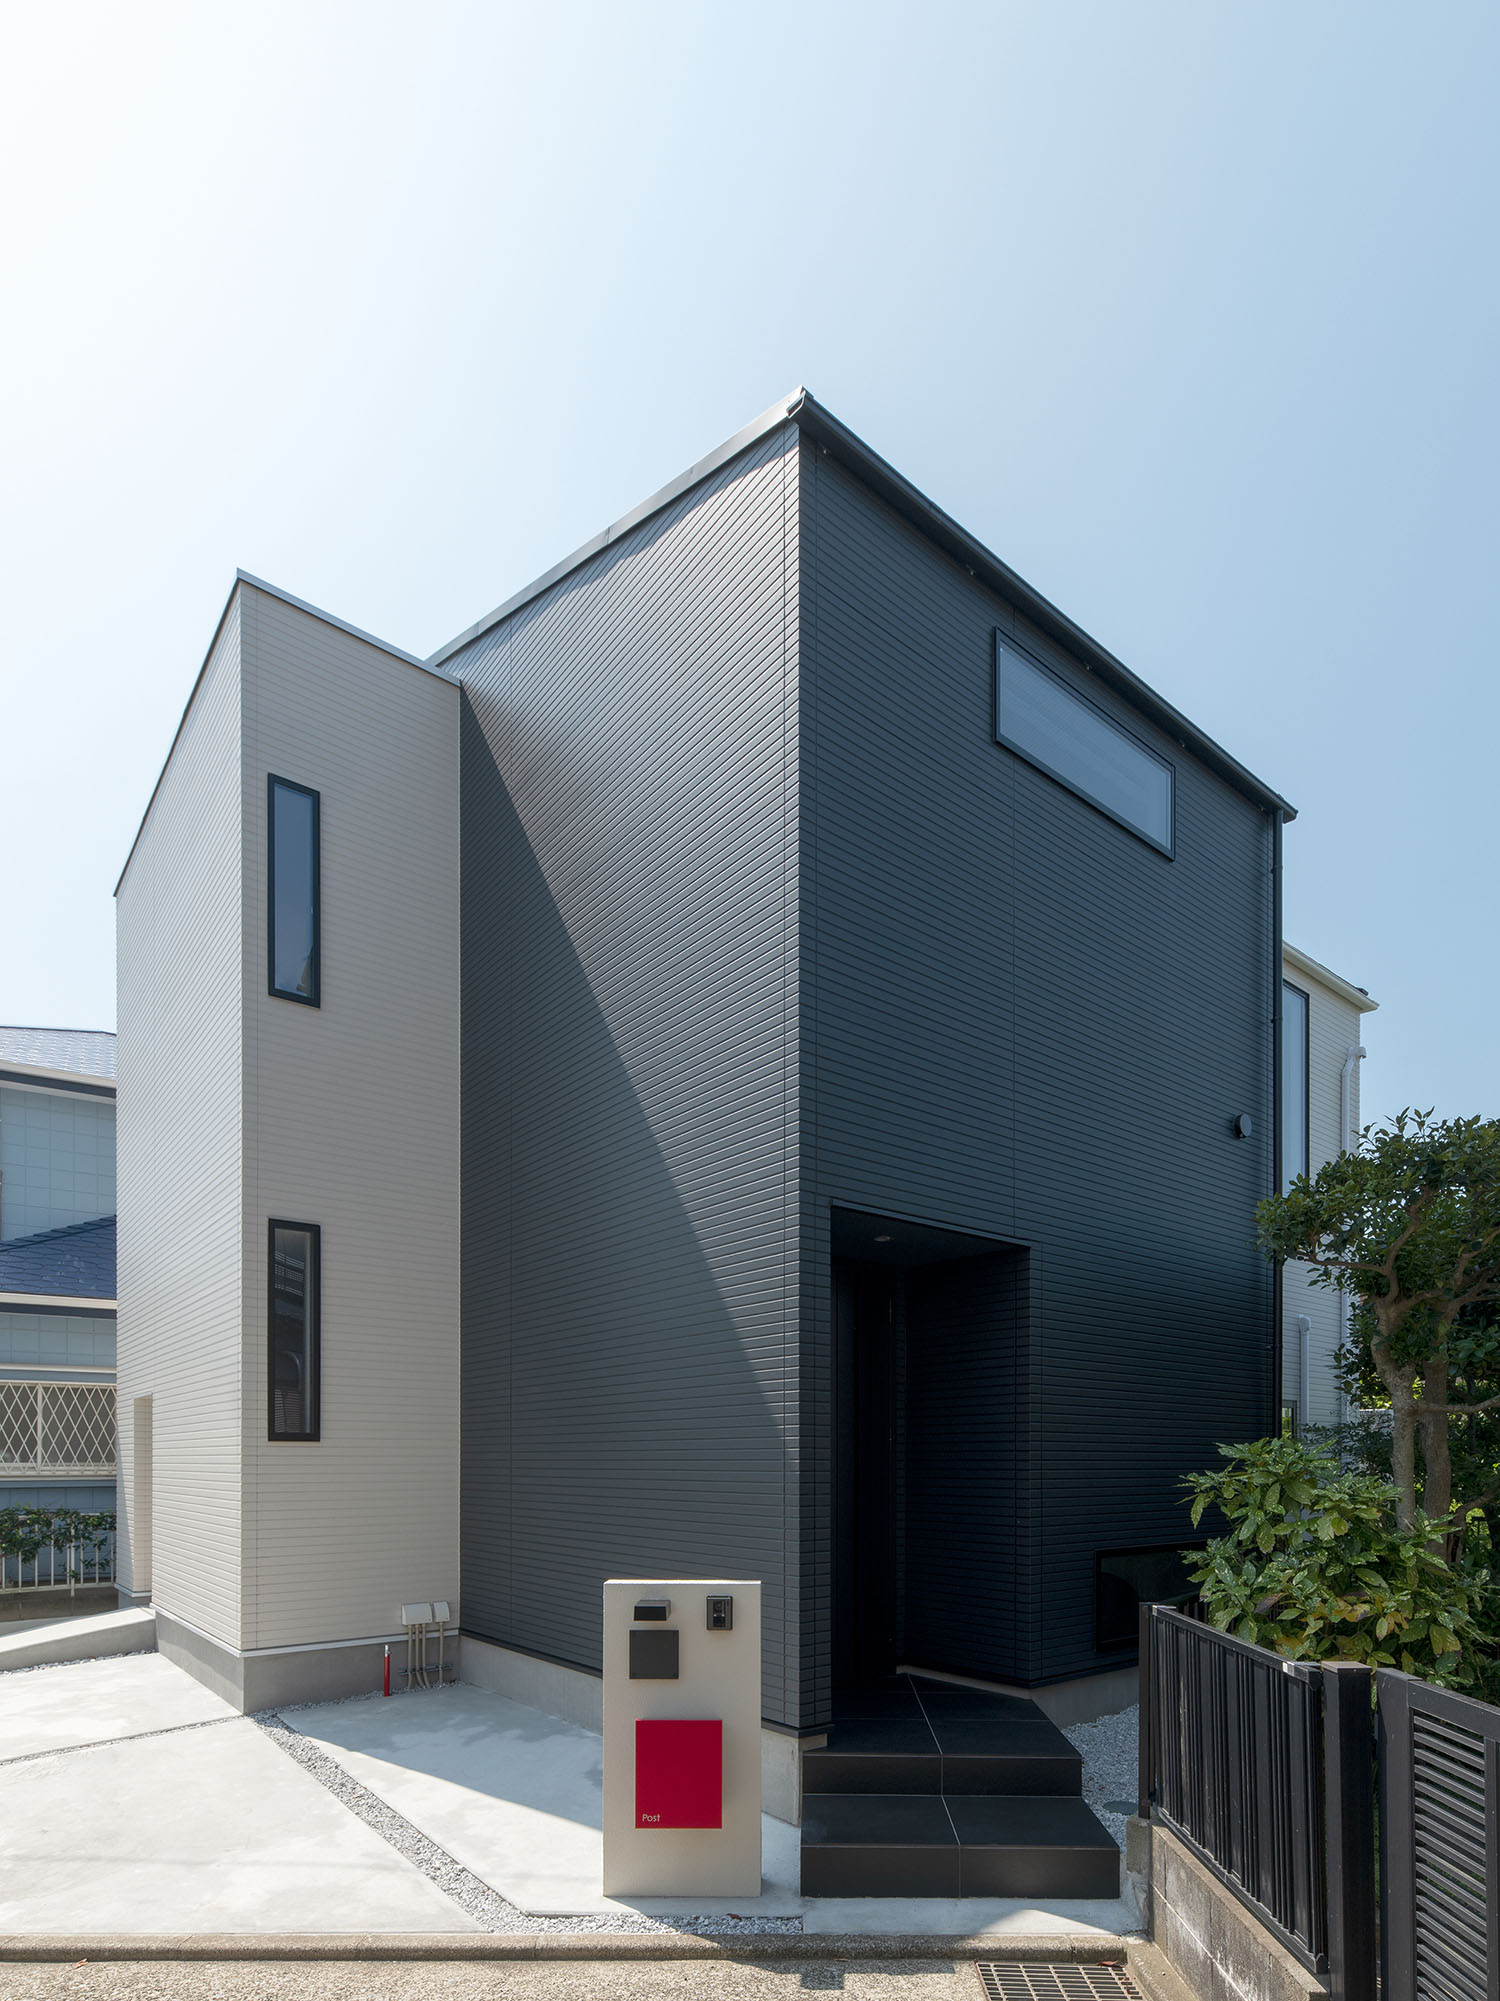 白と黒の二色を使った外観の住宅・デザイン住宅